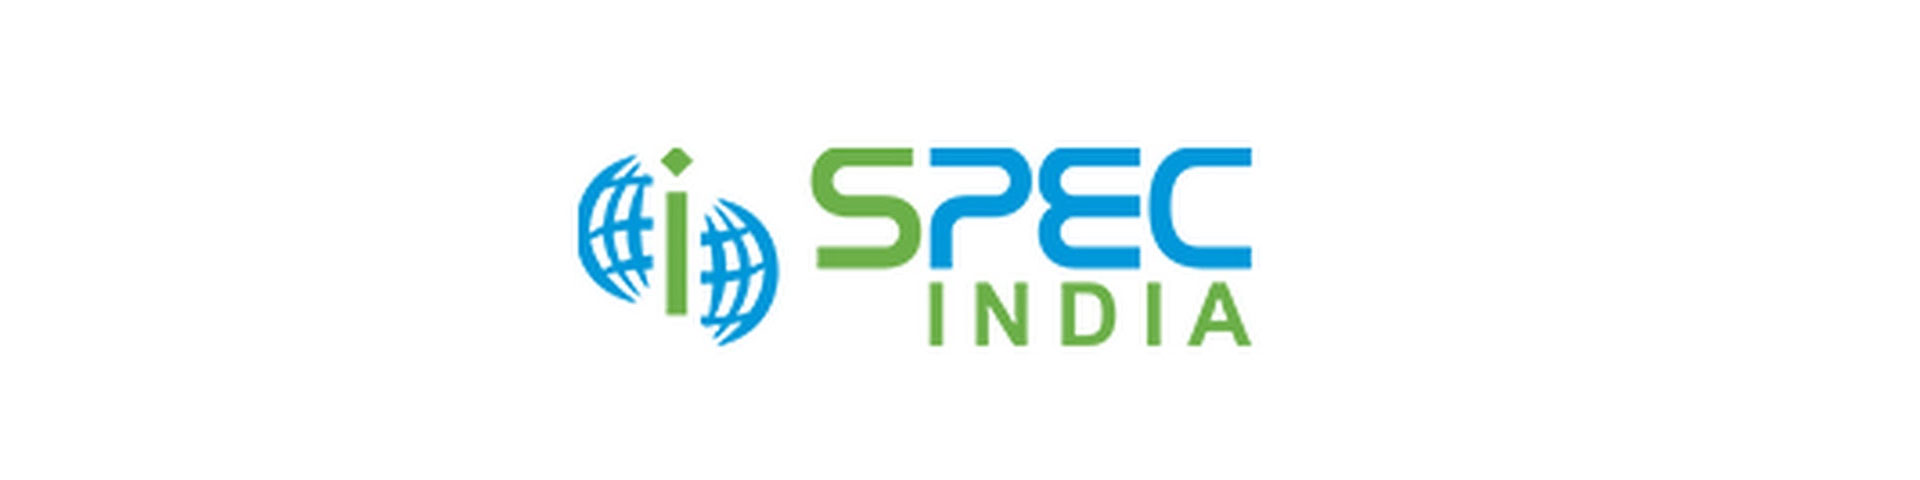 SPEC INDIA